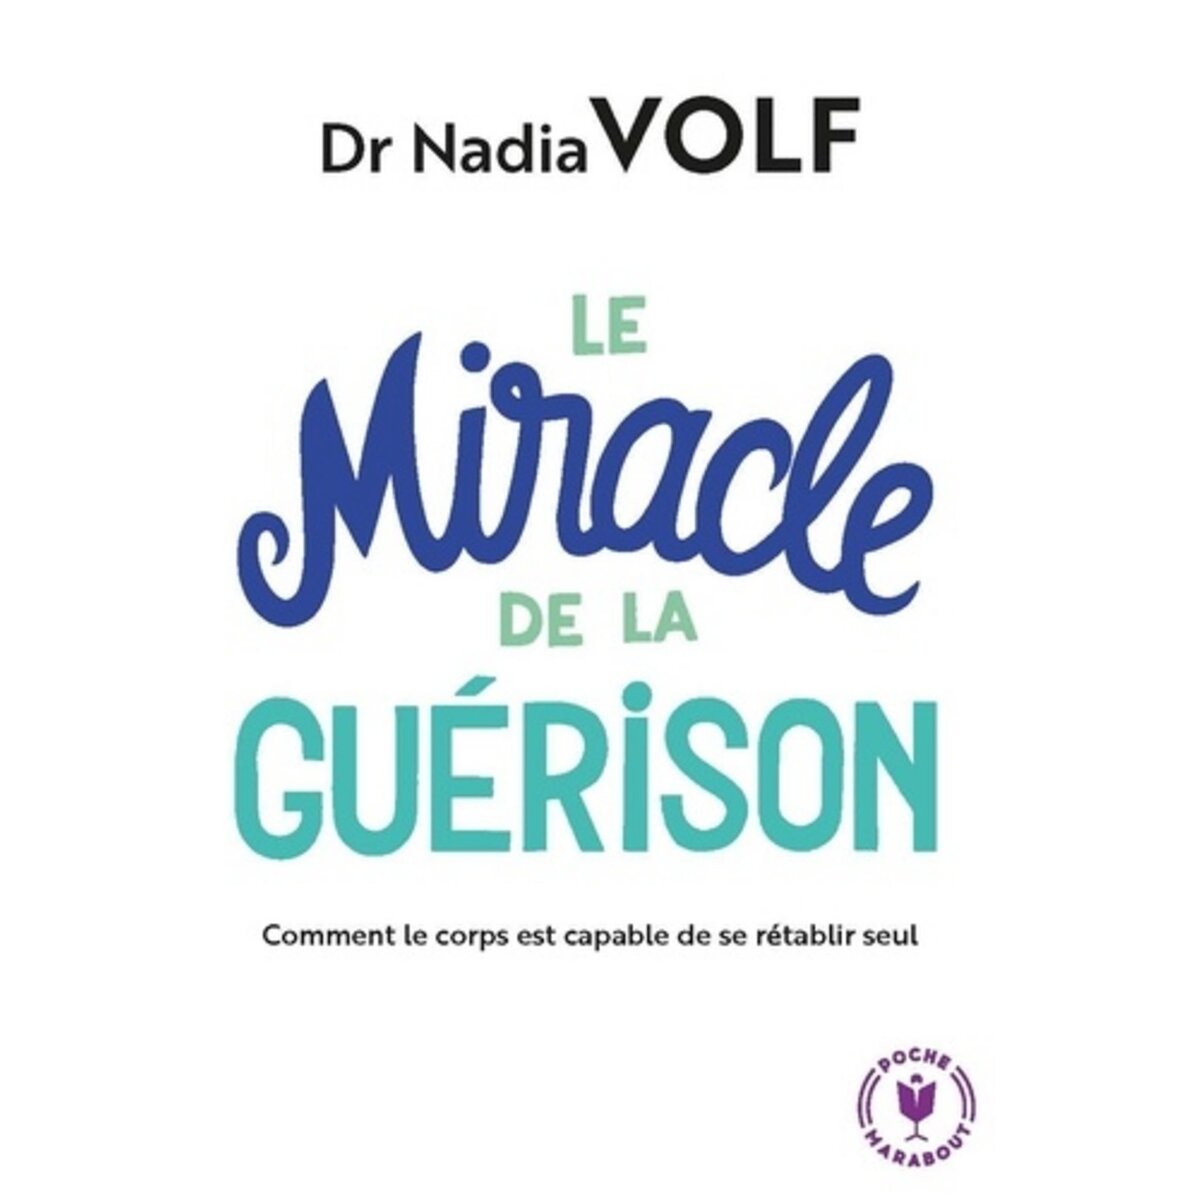  LE MIRACLE DE LA GUERISON, Volf Nadia